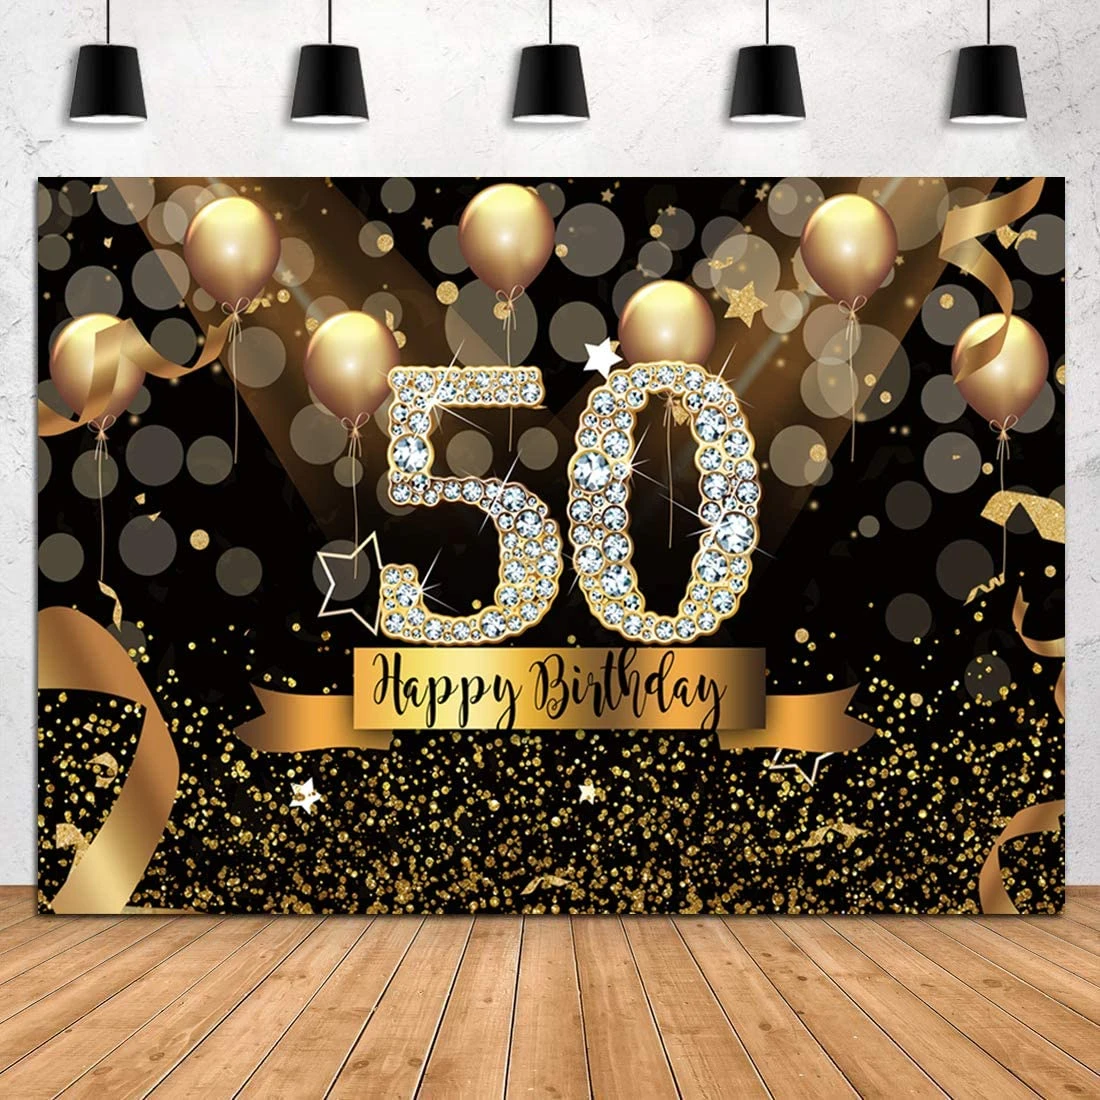 Chào mừng sinh nhật lần thứ 50 của bạn! Đây là một dịp đặc biệt và tuyệt vời để tạo những kỷ niệm đáng nhớ. Hãy cùng xem hình ảnh liên quan để có thêm ý tưởng cho buổi tiệc sinh nhật của bạn.